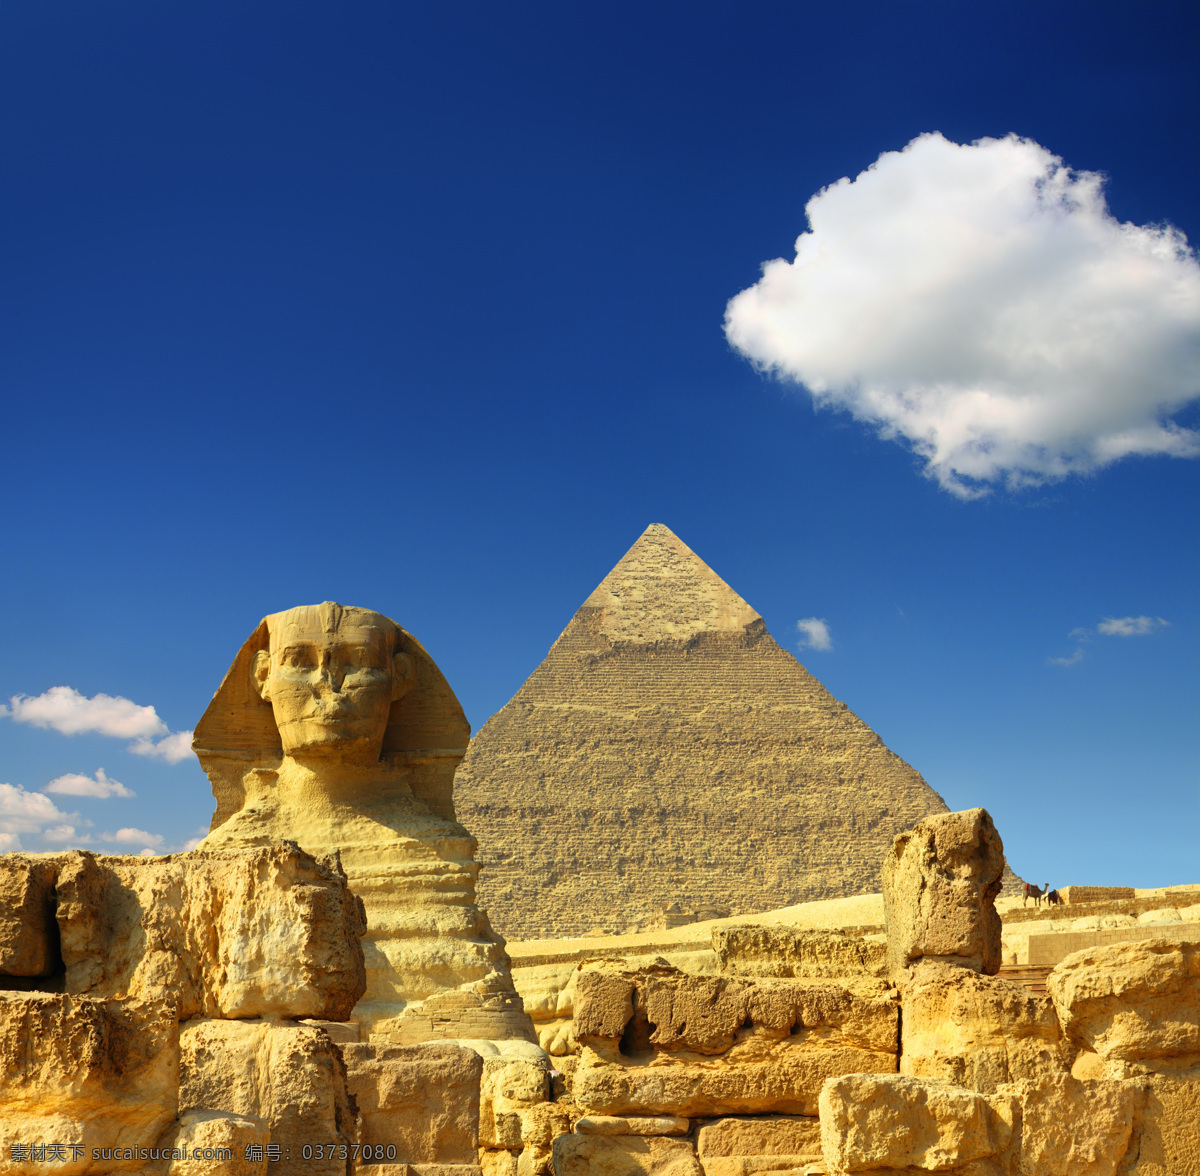 蓝天 下 狮身人面像 金字塔 蓝天白云 埃及旅游景点 美丽风景 文明古迹 美丽景色 埃及金字塔 风景图片